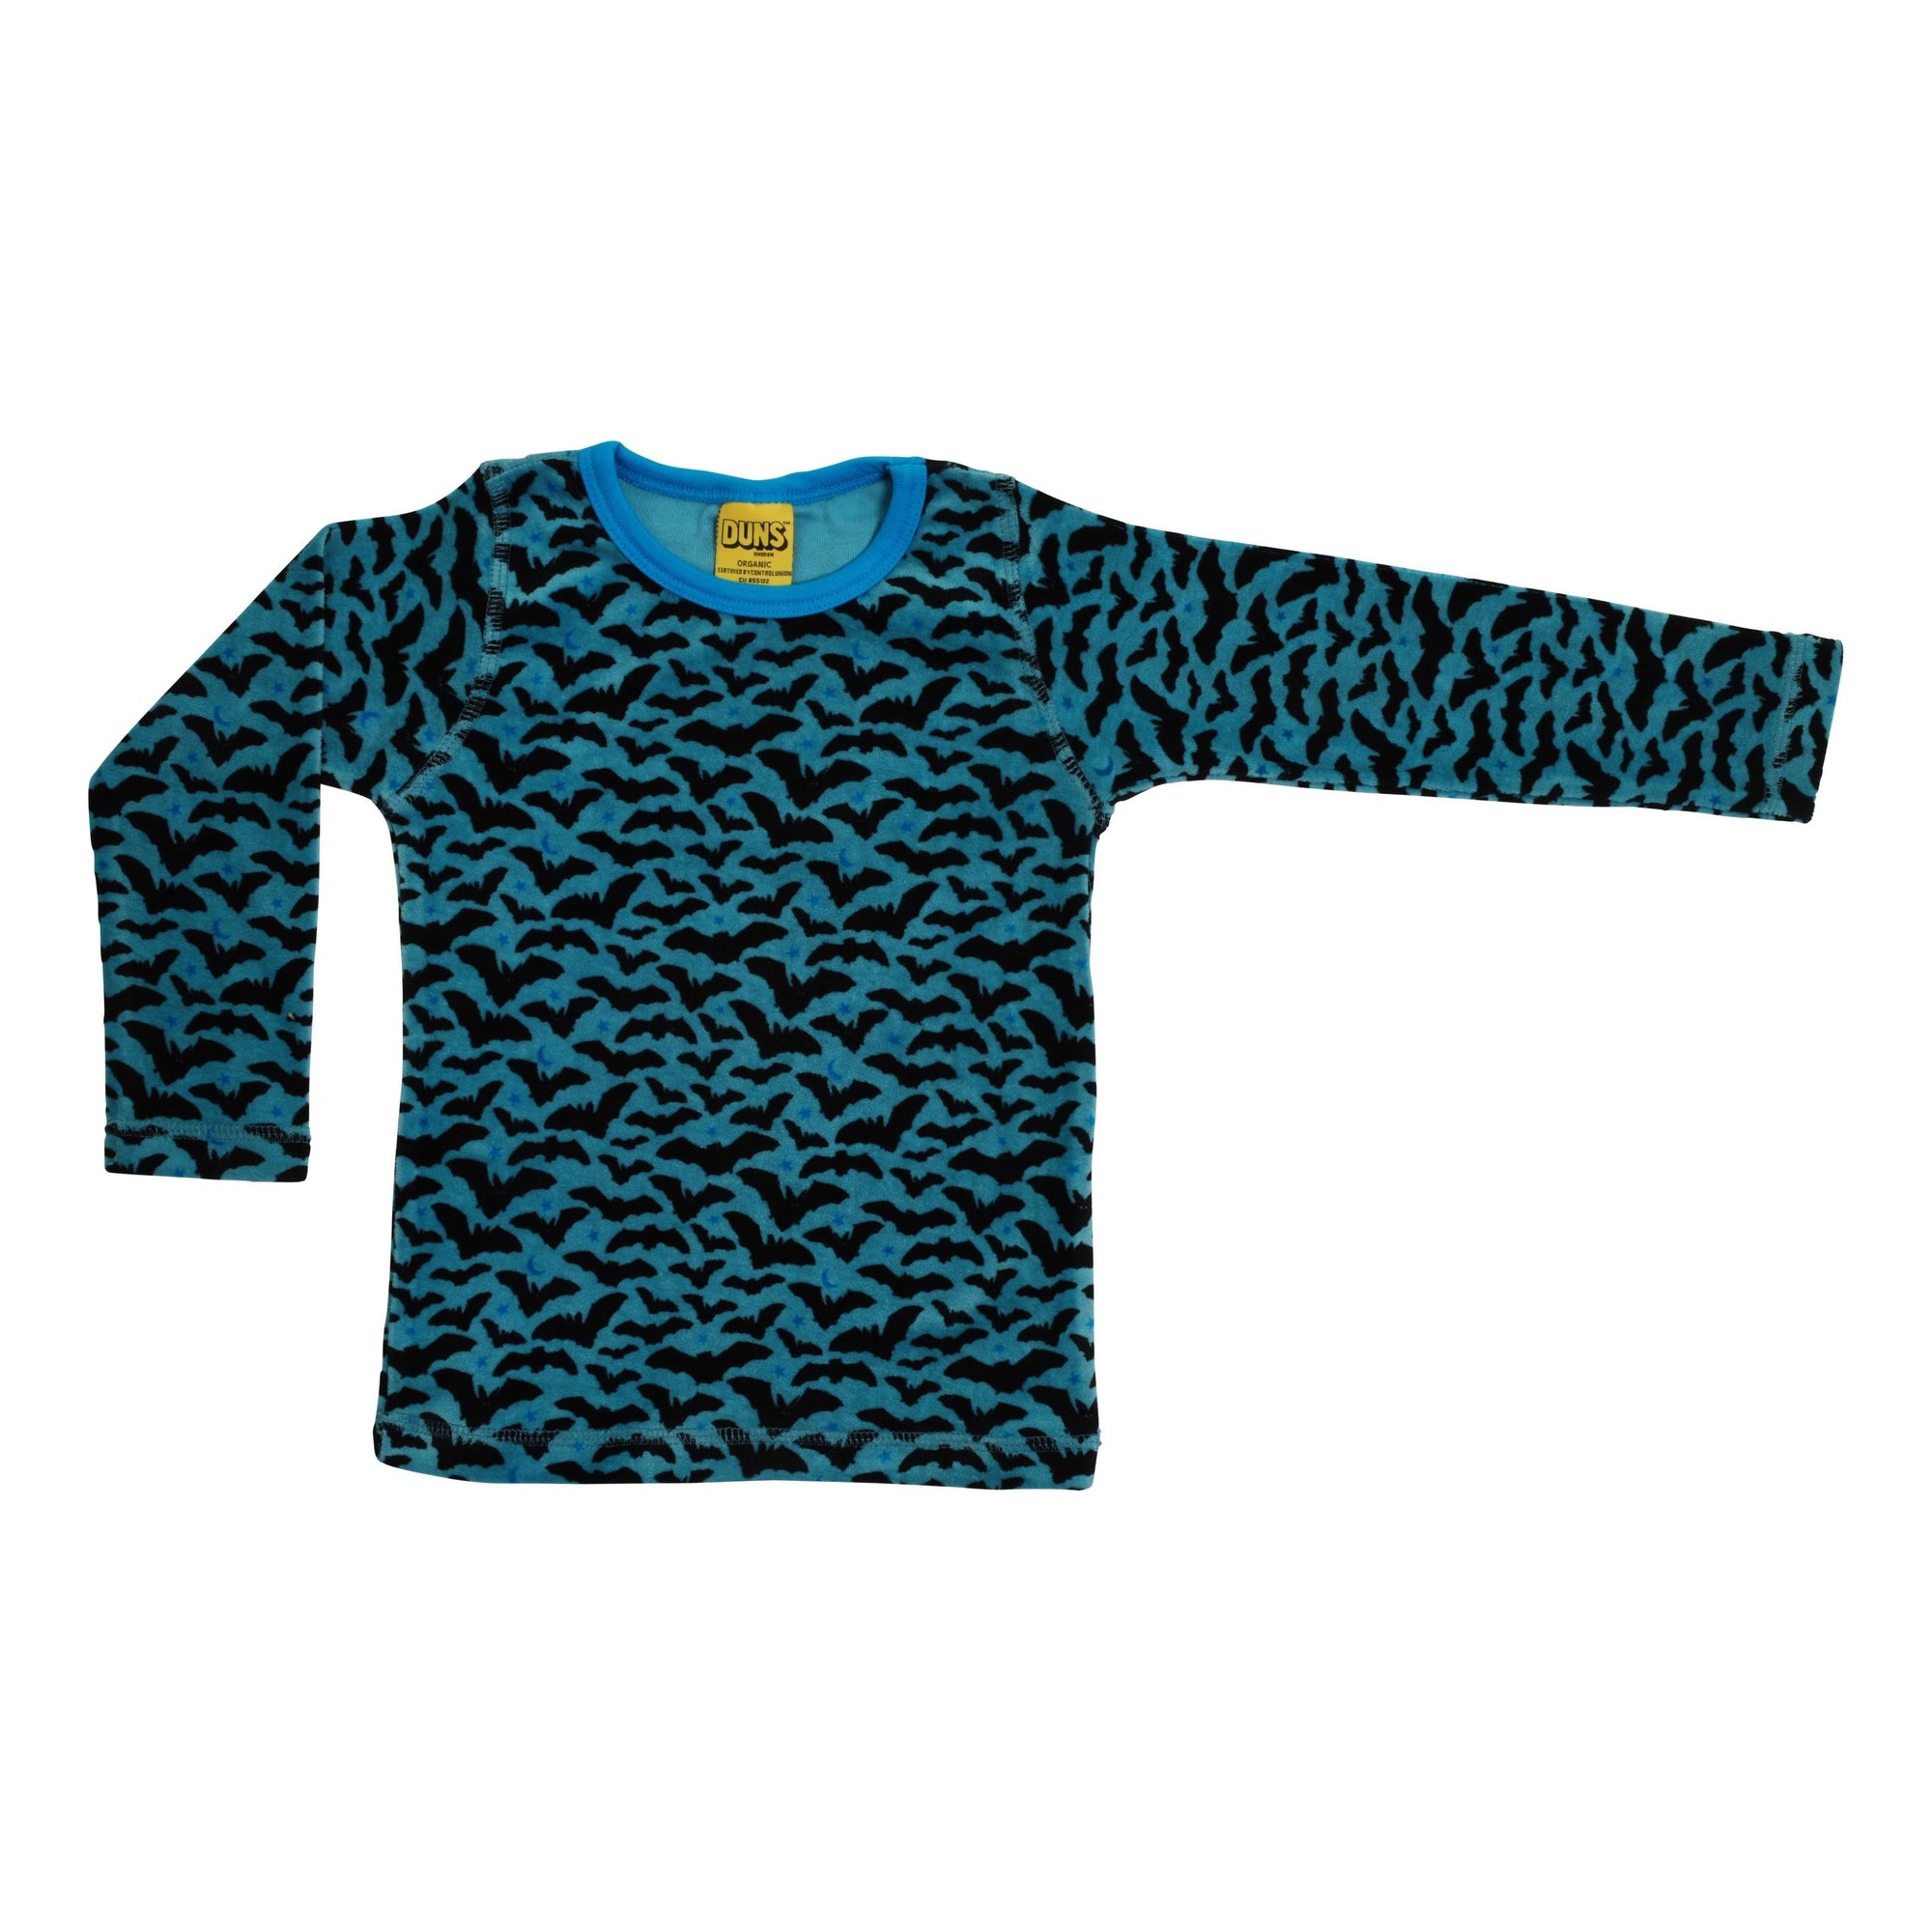 Bats Velour Long Sleeve Shirt - Blue - 2 Left Size 1-2 & 2-4 years-Duns Sweden-Modern Rascals